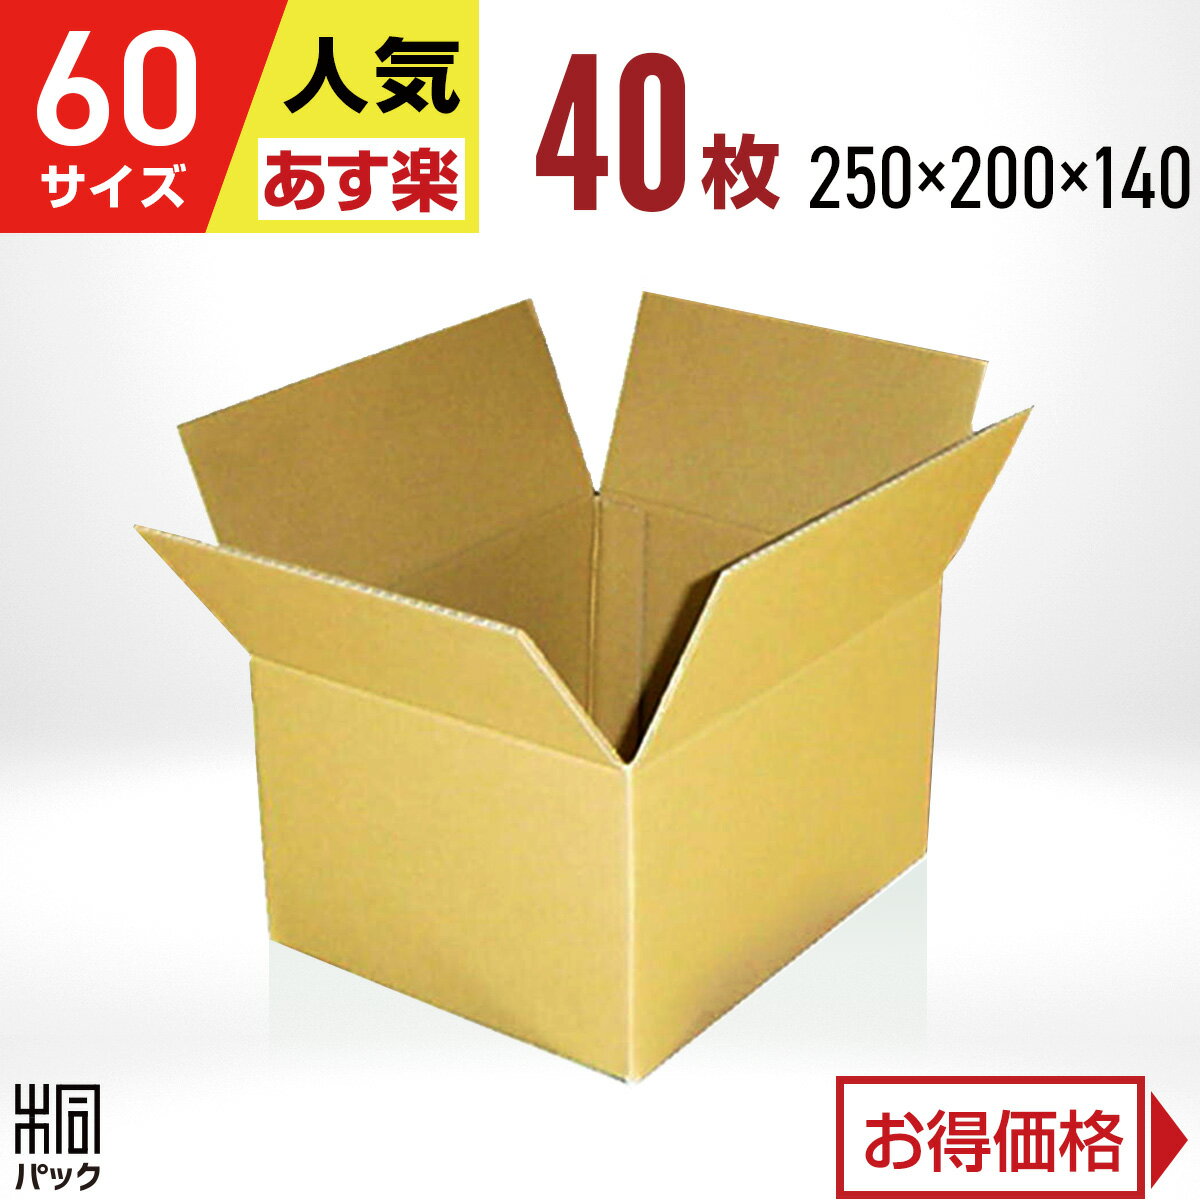 カリラ ダンボール 箱 60サイズ 40枚 (250x200x140) 段ボール 60 宅配 梱包 通販 資材 用 セット 日本製 安い A式 みか